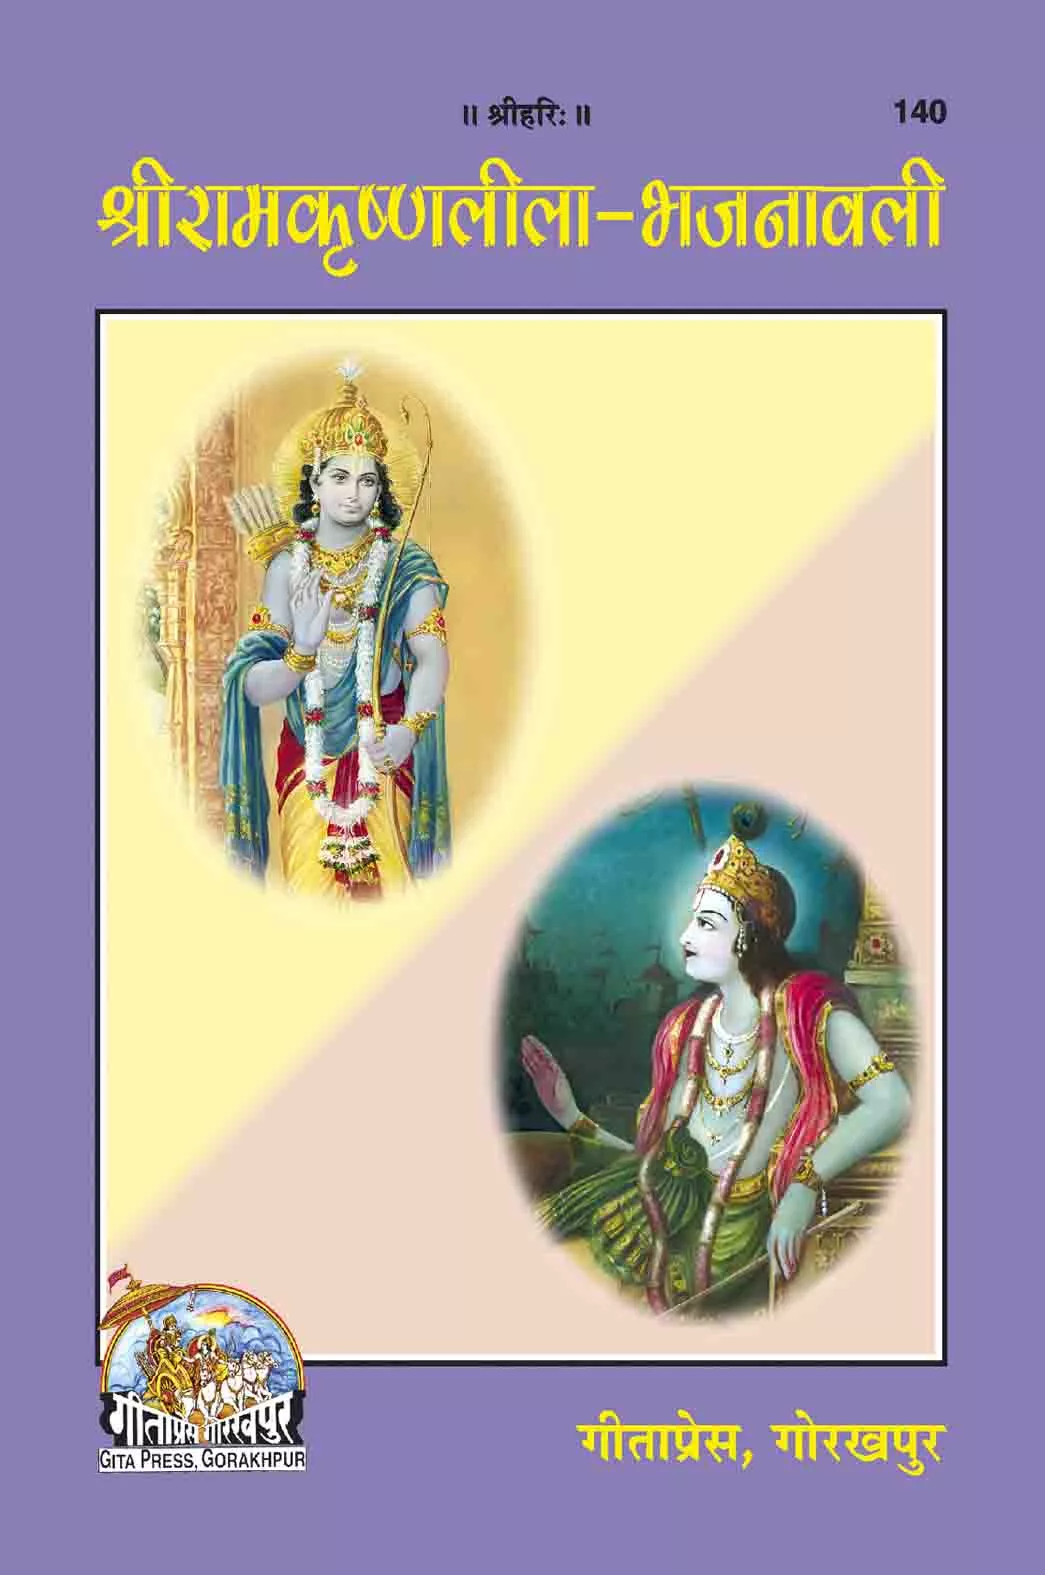 Sri Ramakrishnaleela-Bhajanawali